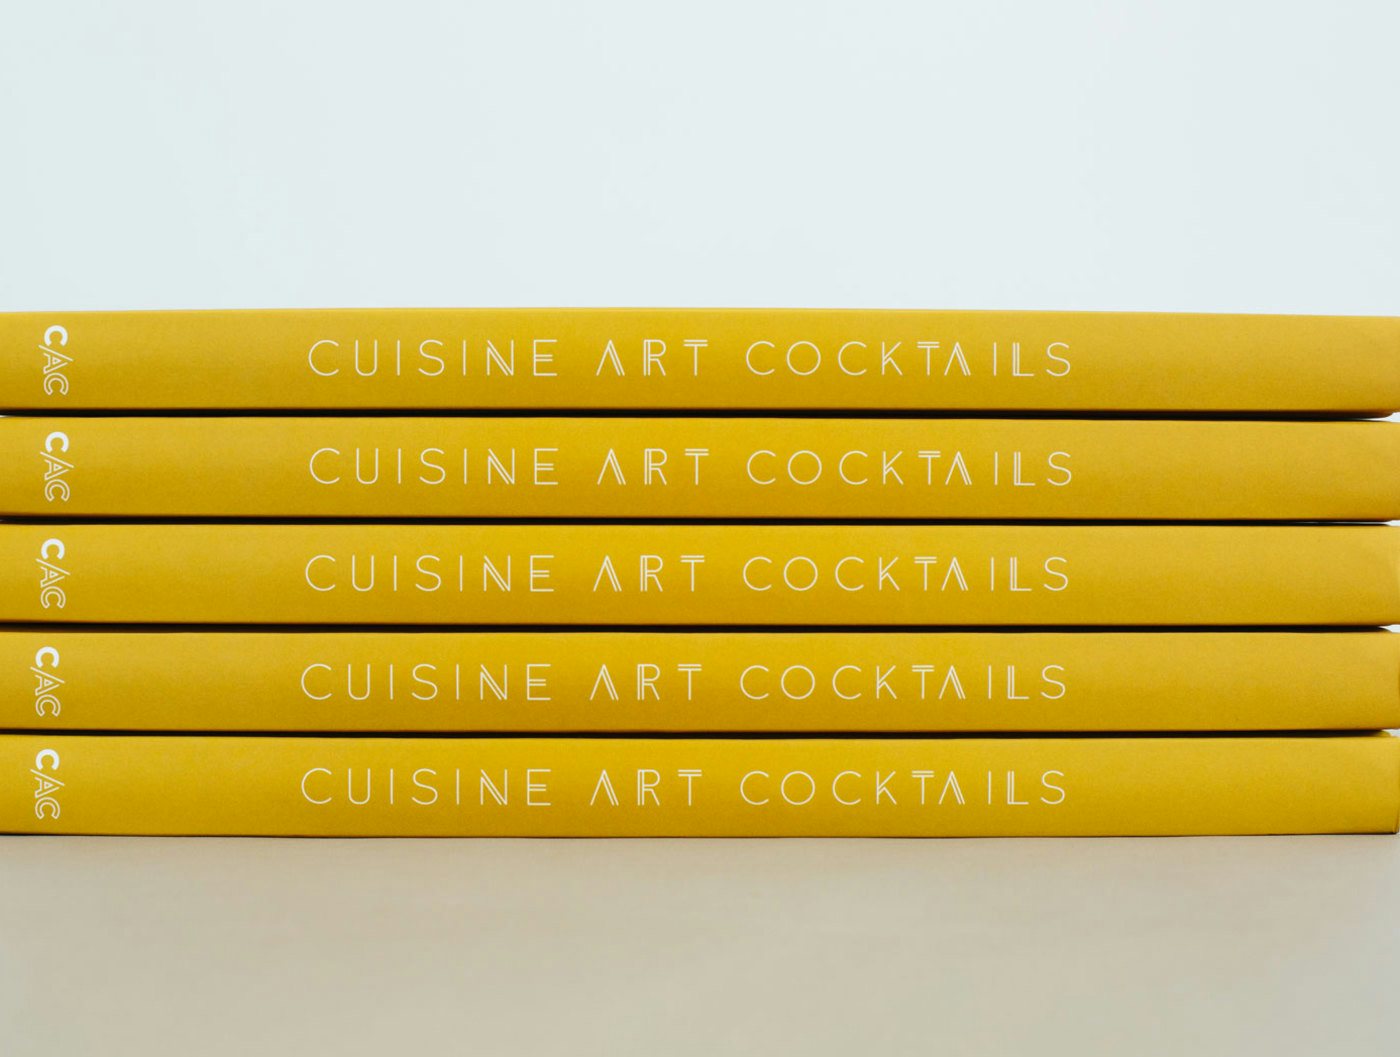 Cuisine Art Cocktails Panel